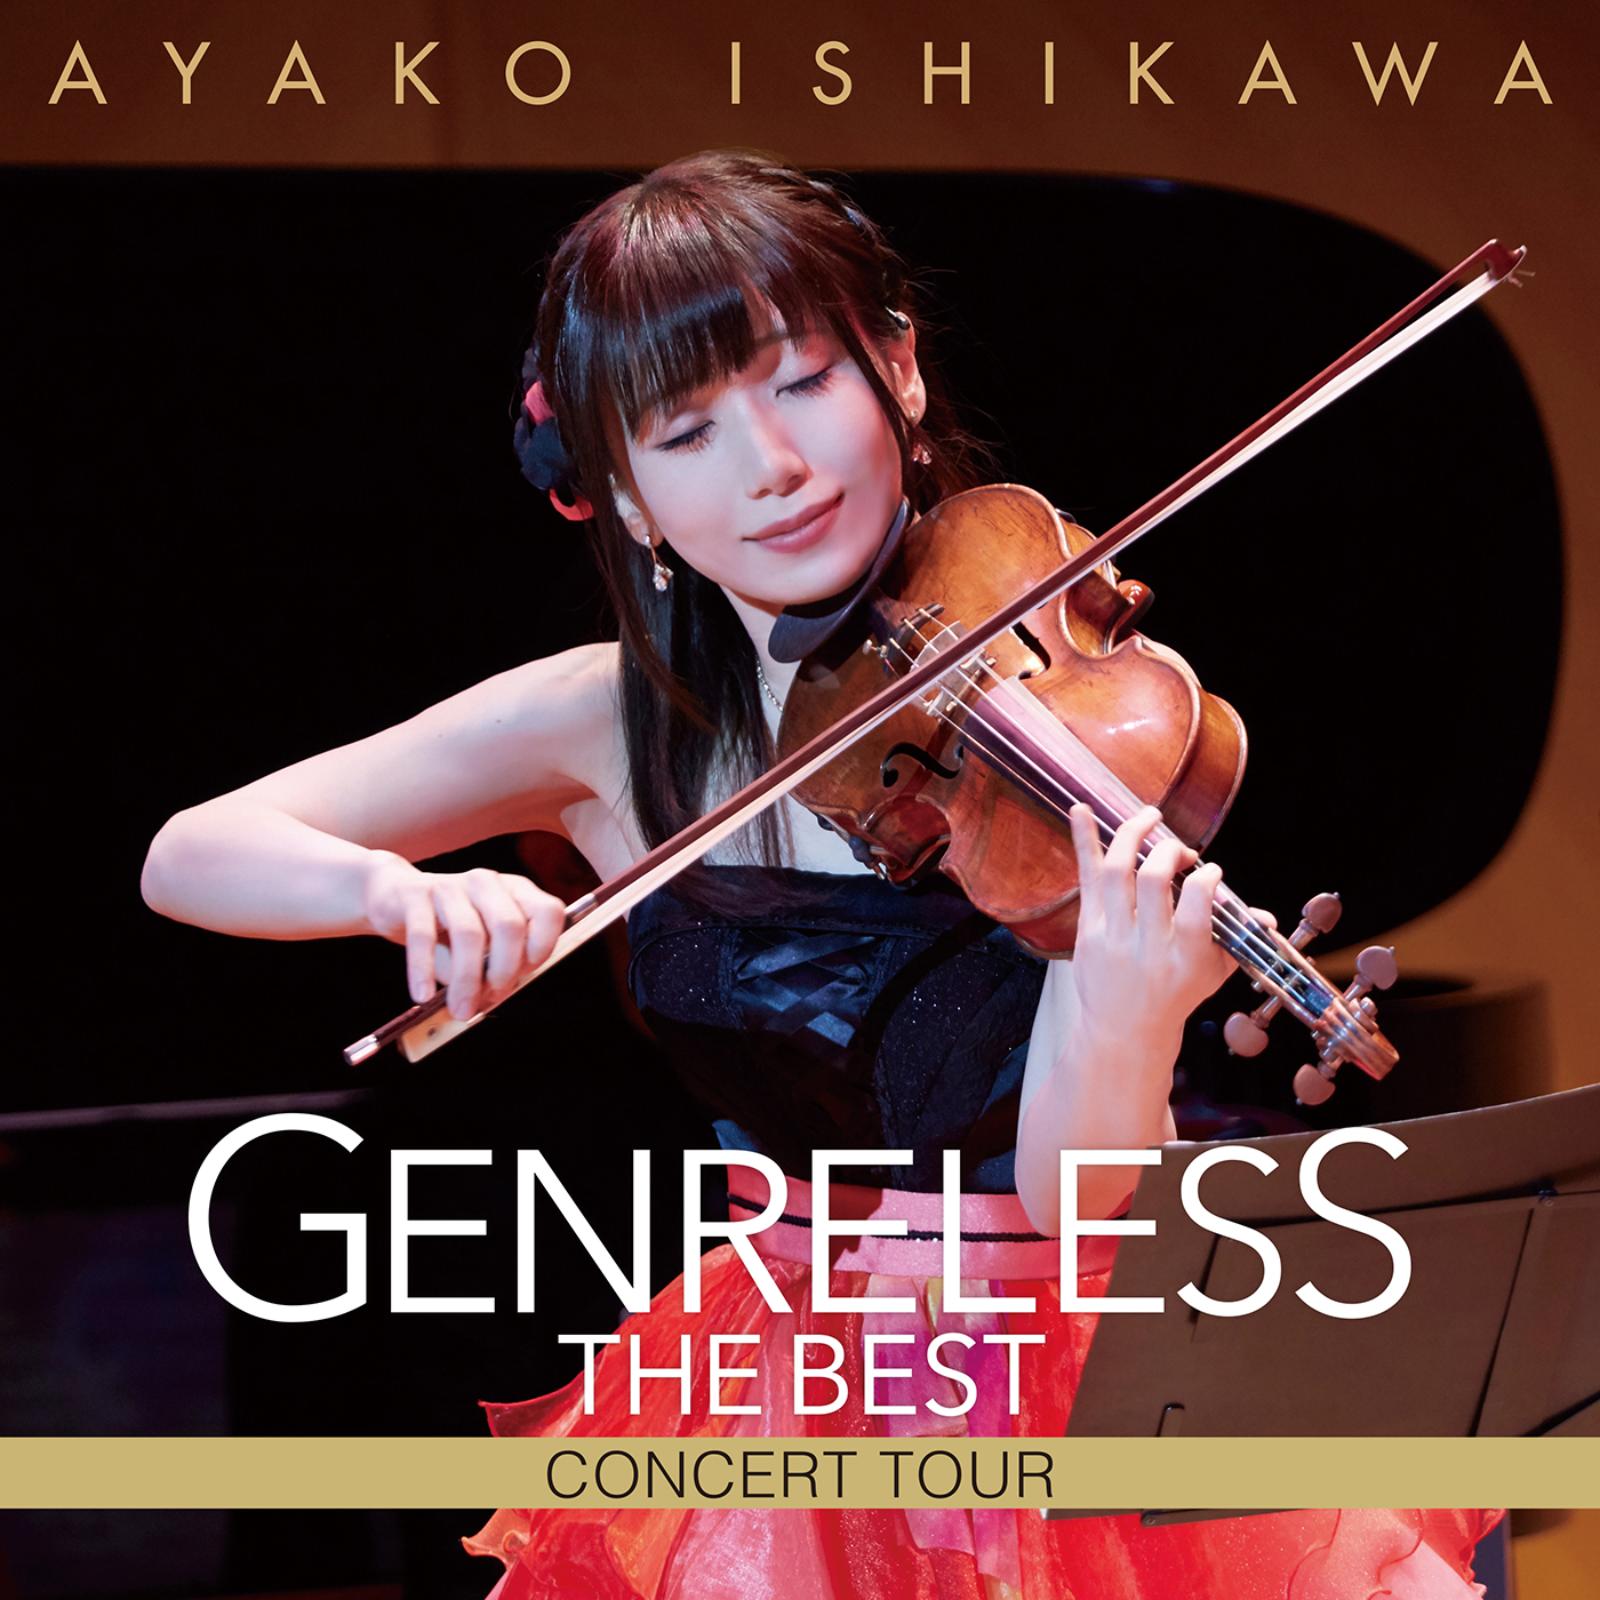 石川綾子 (Ayako Ishikawa) - ジャンルレス THE BEST コンサートツアー (Genreless THE BEST Concert Tour) [Ototoy FLAC 24bit/192kHz + Blu-Ray ISO]